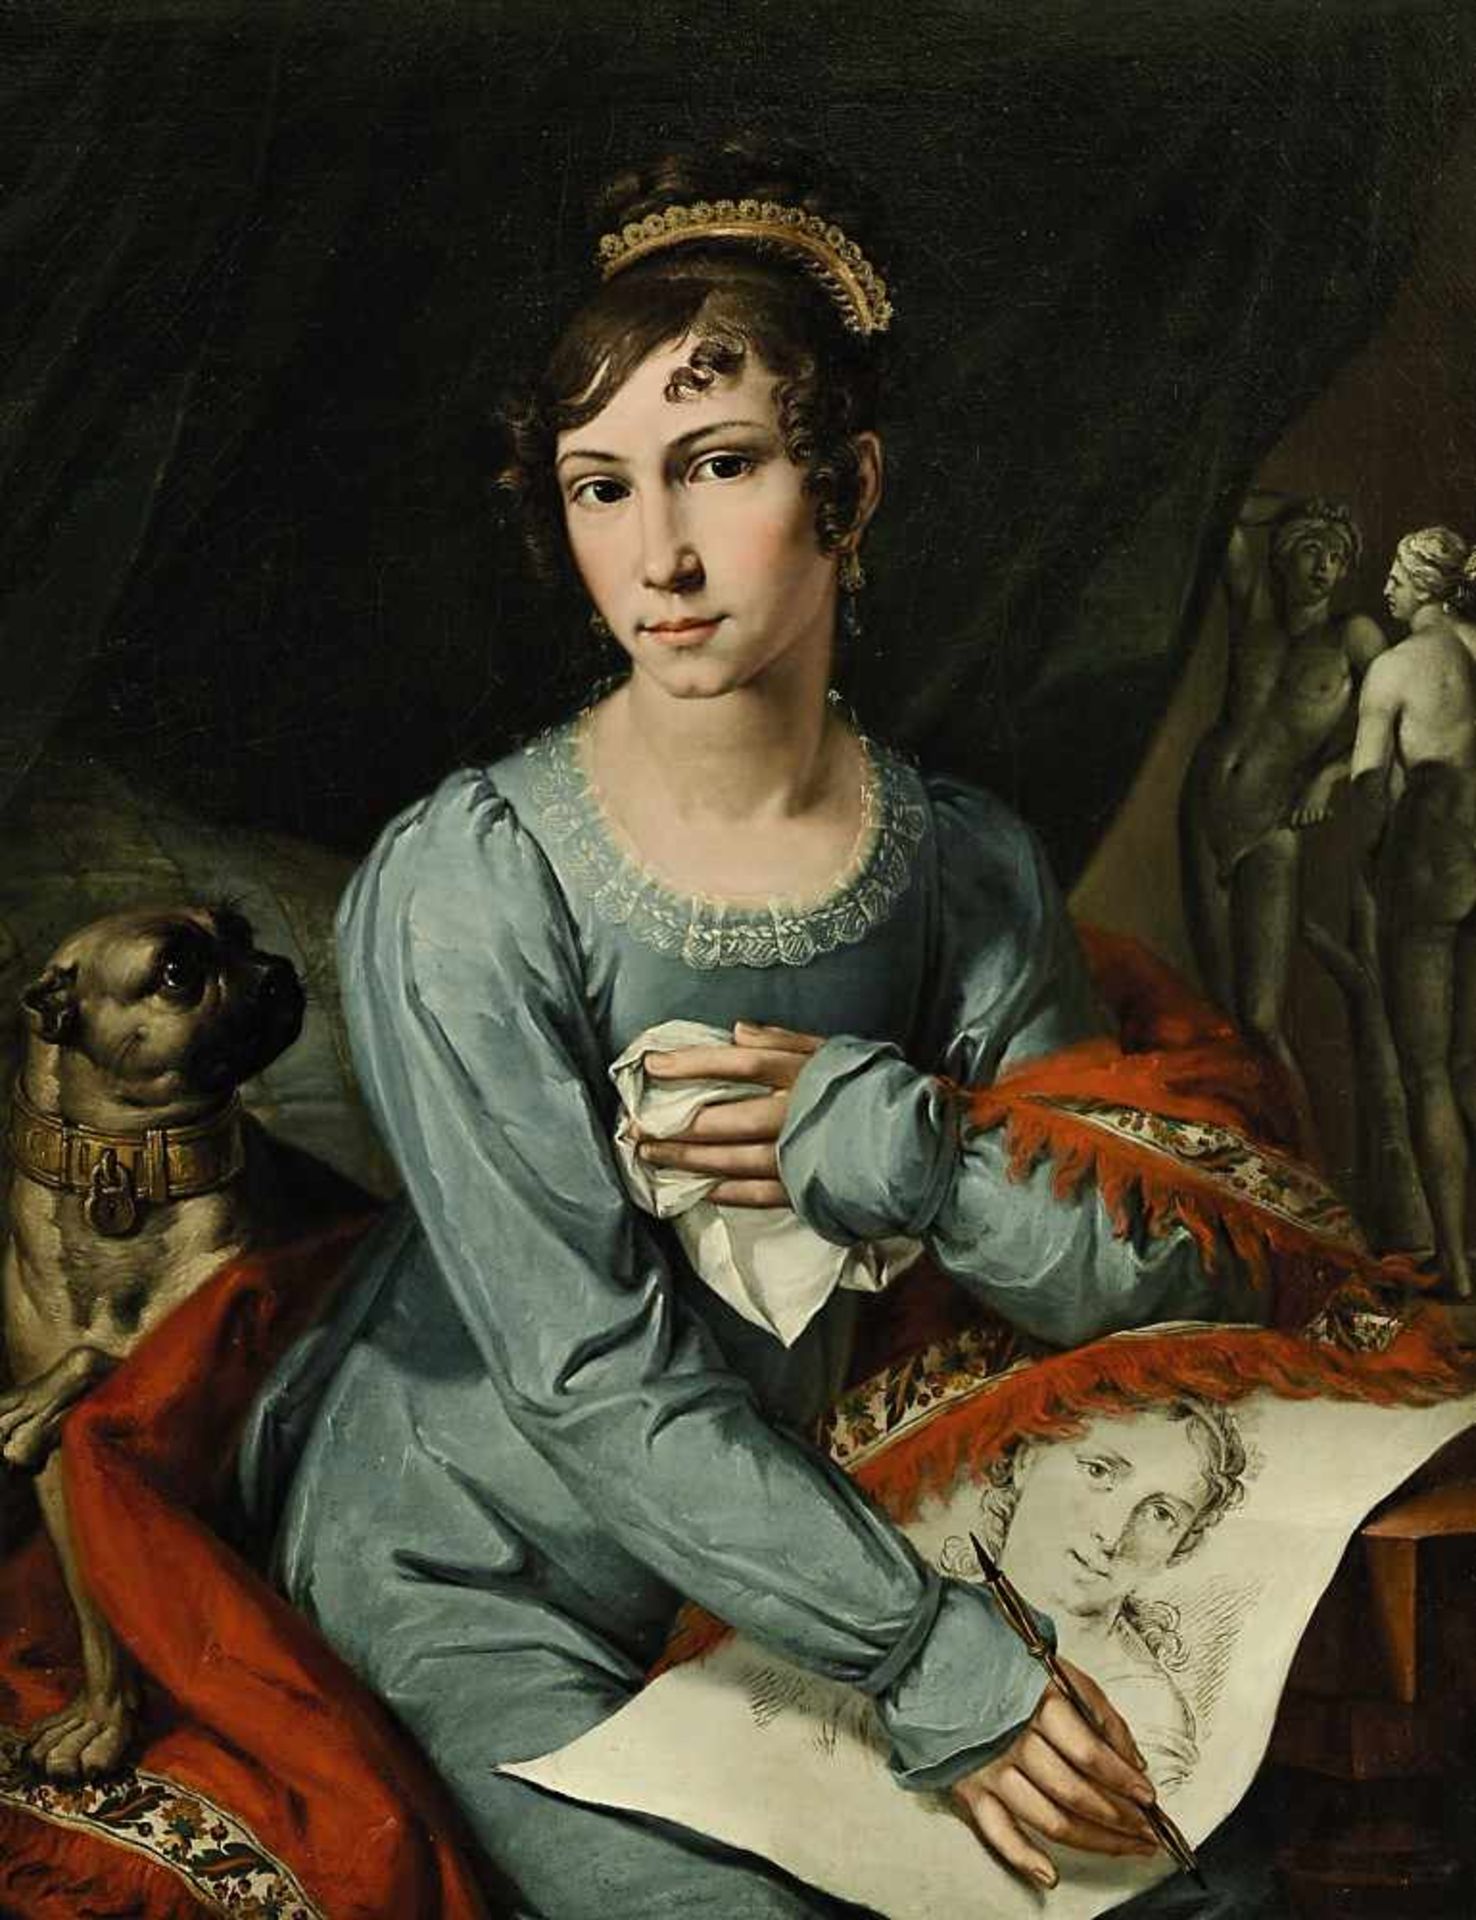 Unbekannt 1. Hälfte 19. Jh. Portrait einer jungen Dame mit Hund und Zeichenblatt Öl / Lwd. 77 x 60